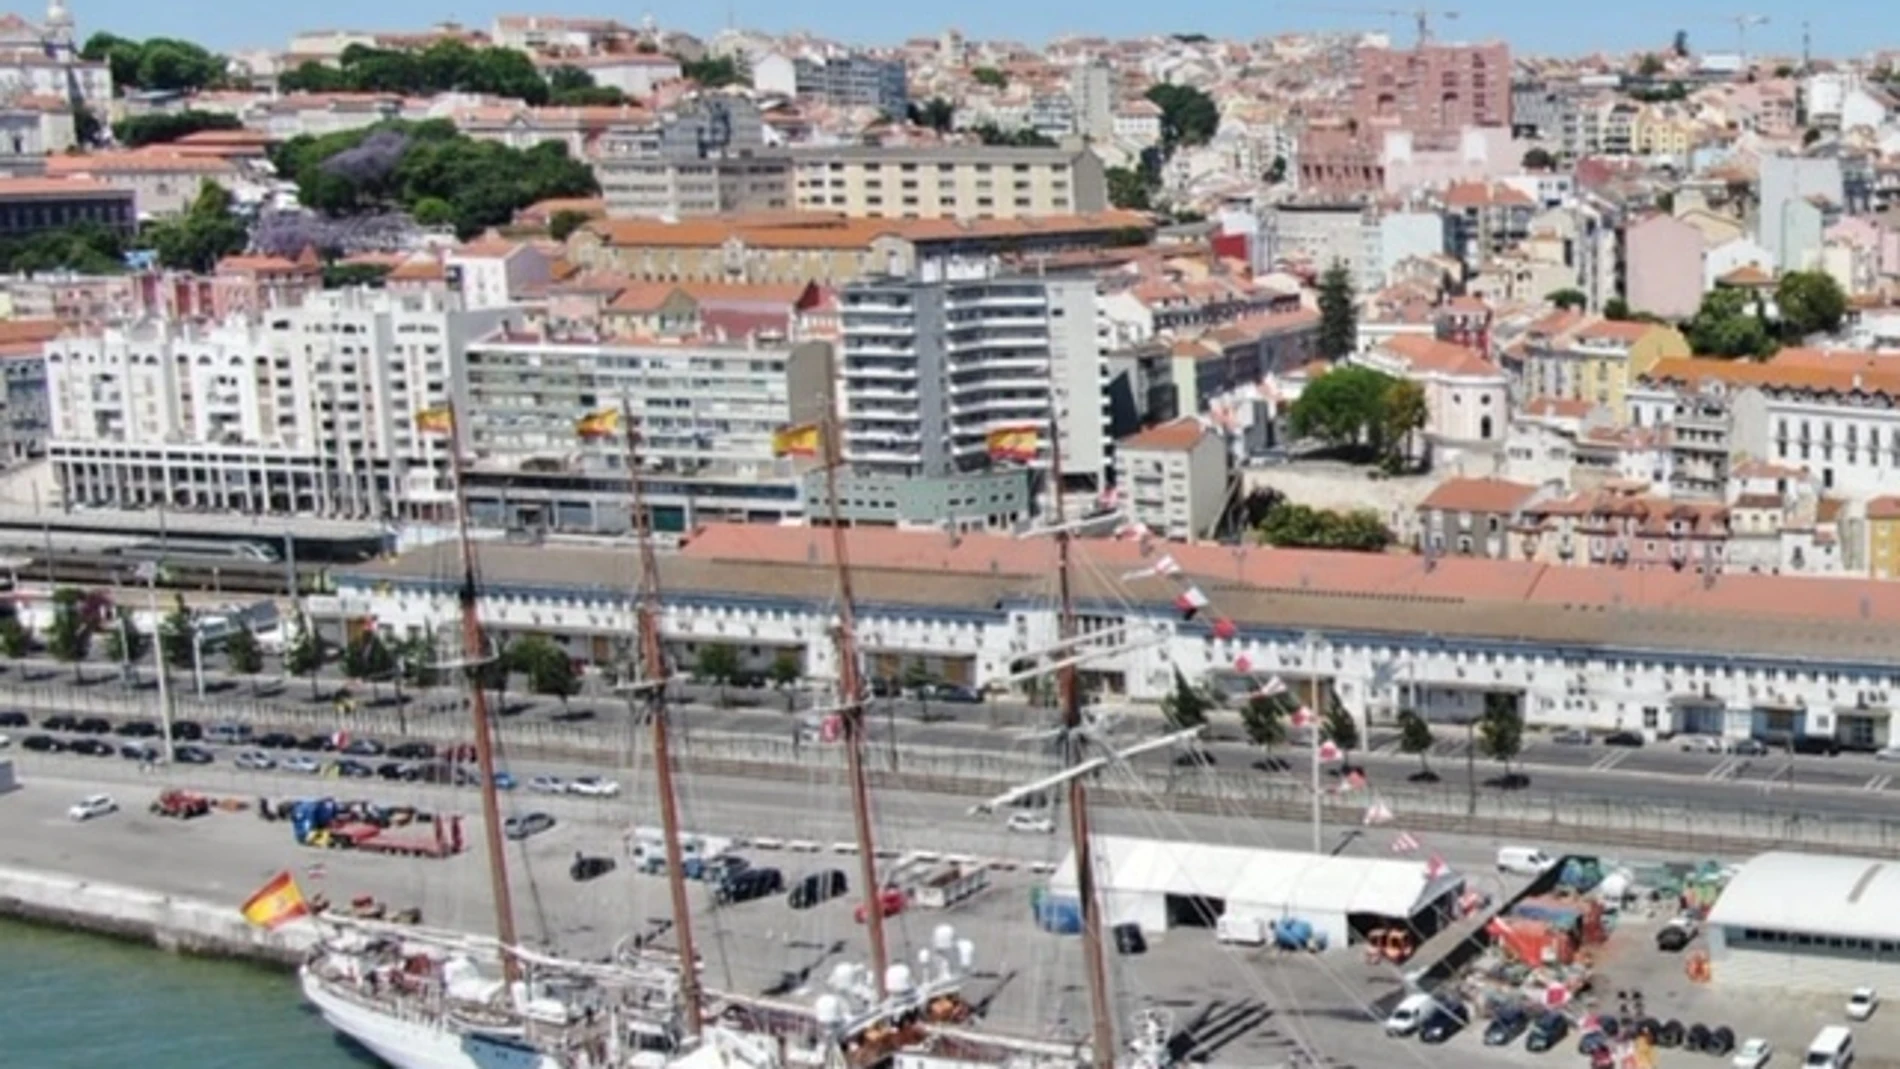 Vista aérea del buque Juan Sebastián de Elcano